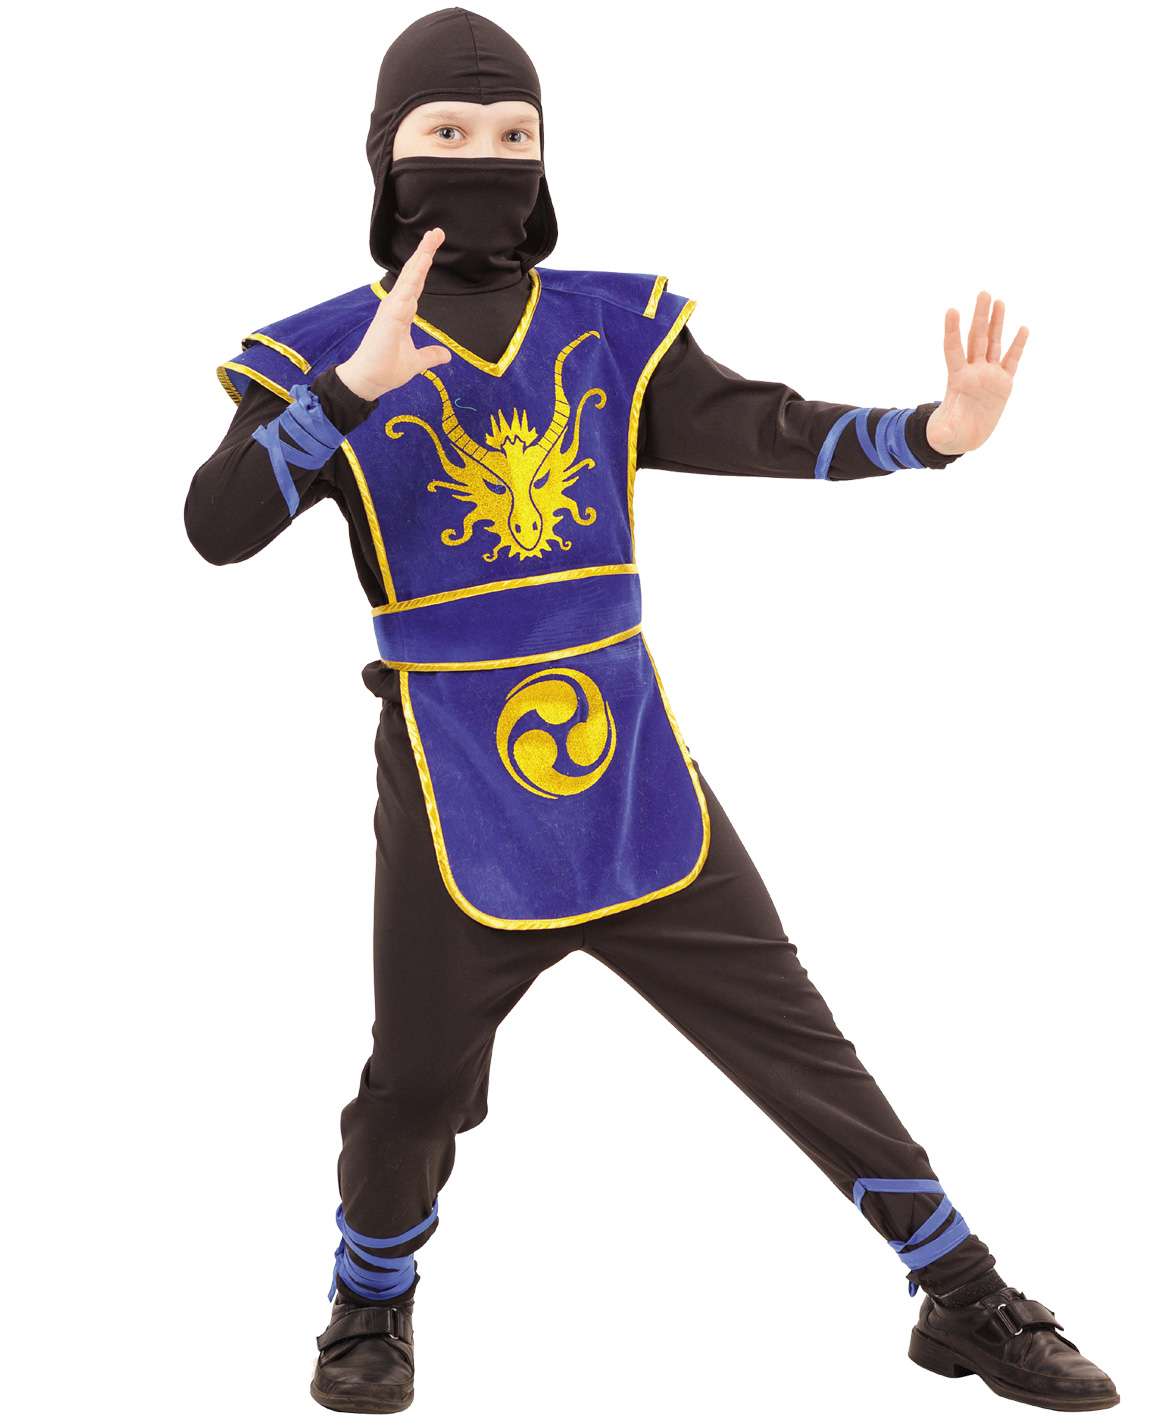 2053 к-18 Карнавальный костюм Ниндзя (куртка,трико, накидка с поясом, шапка, меч) размер 116-30